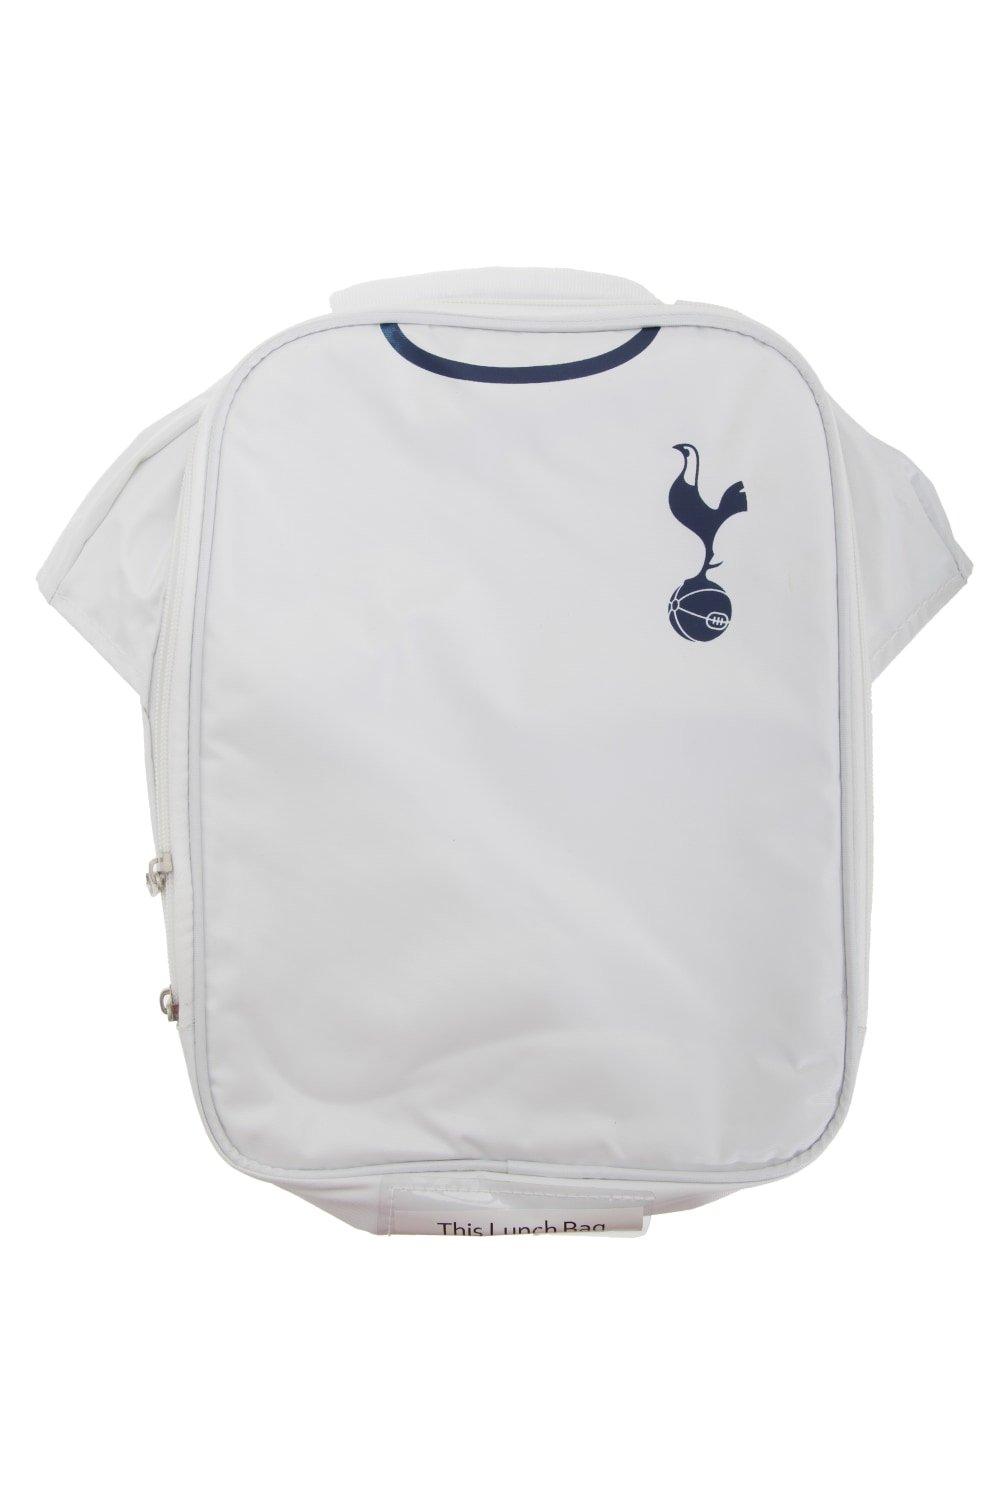 Официальная изолированная футбольная рубашка-холодильник для сумки для обеда Tottenham Hotspur FC, белый printio футболка классическая официальная эмблема футбольного клуба тоттенхэм